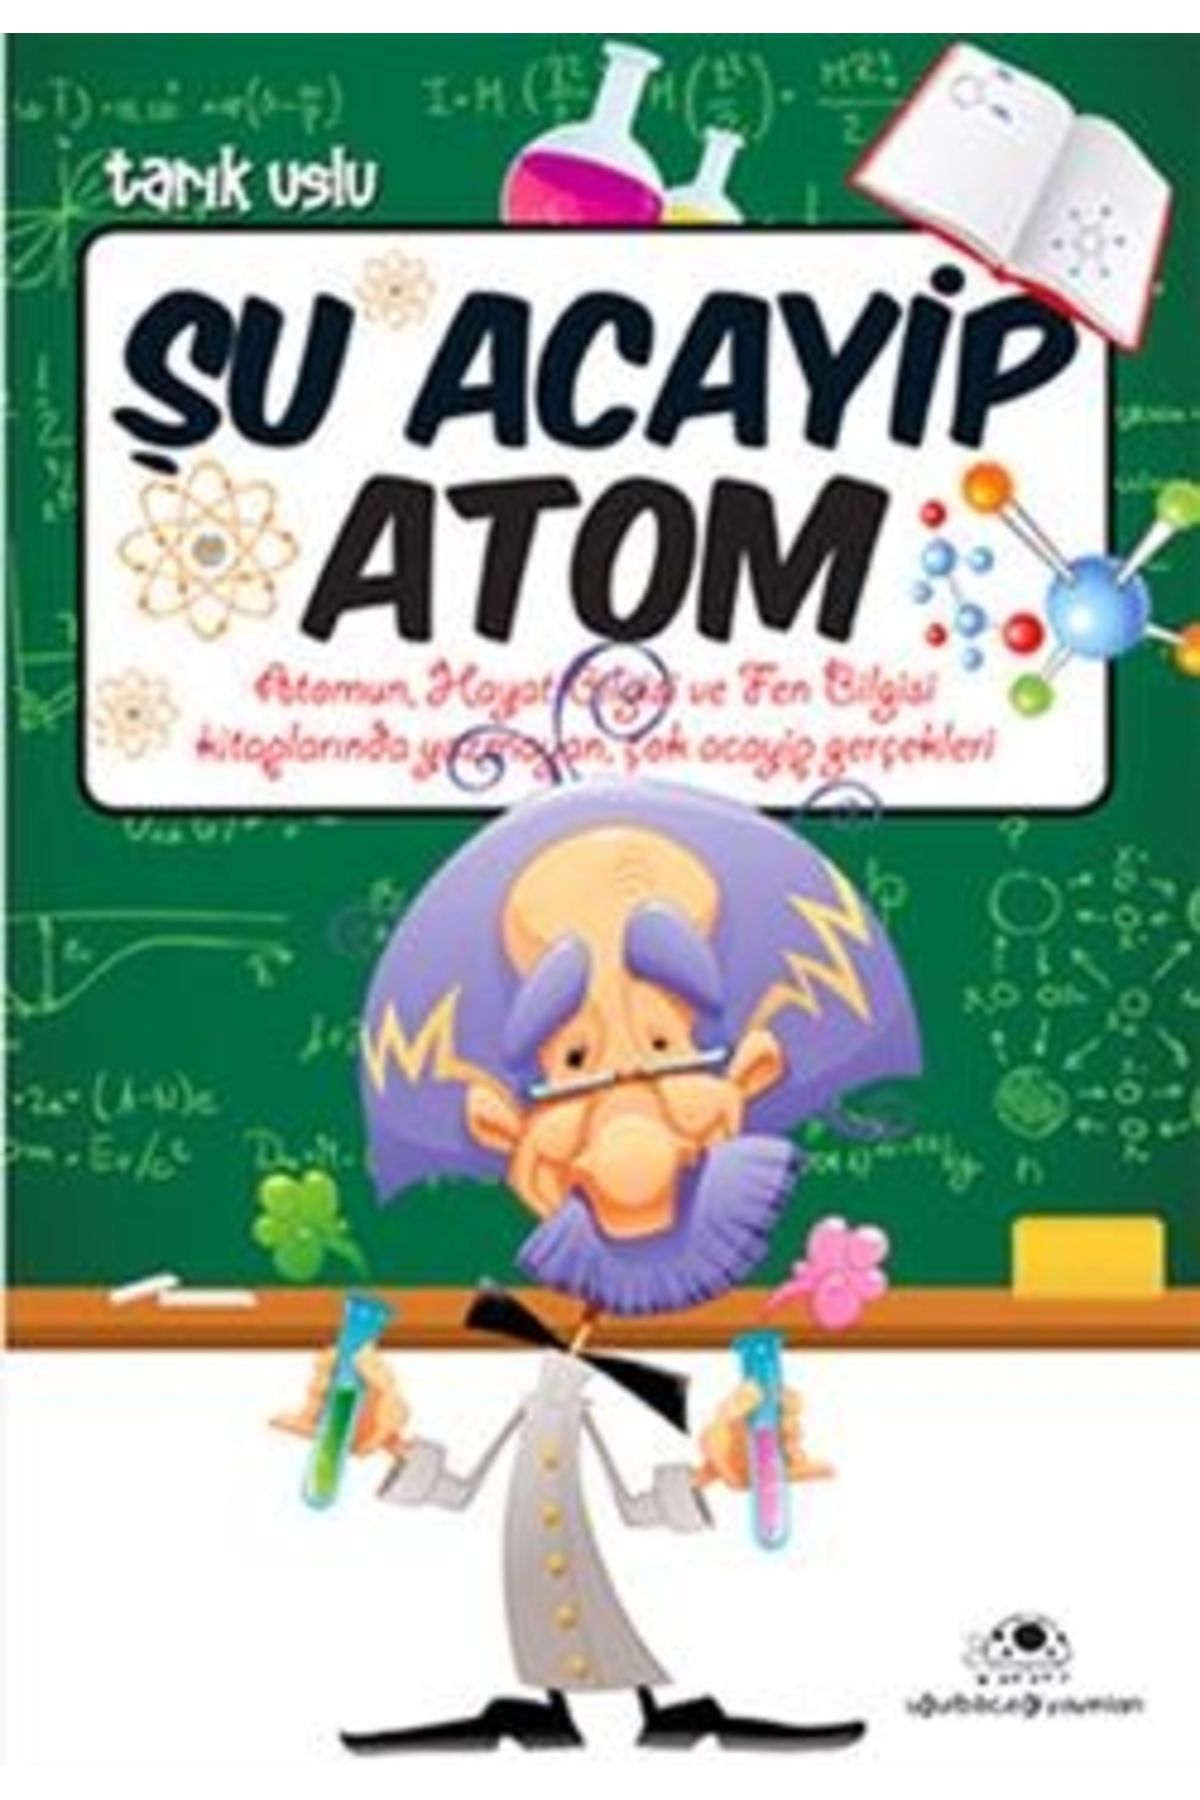 Uğurböceği Yayınları Şu Acayip Atom